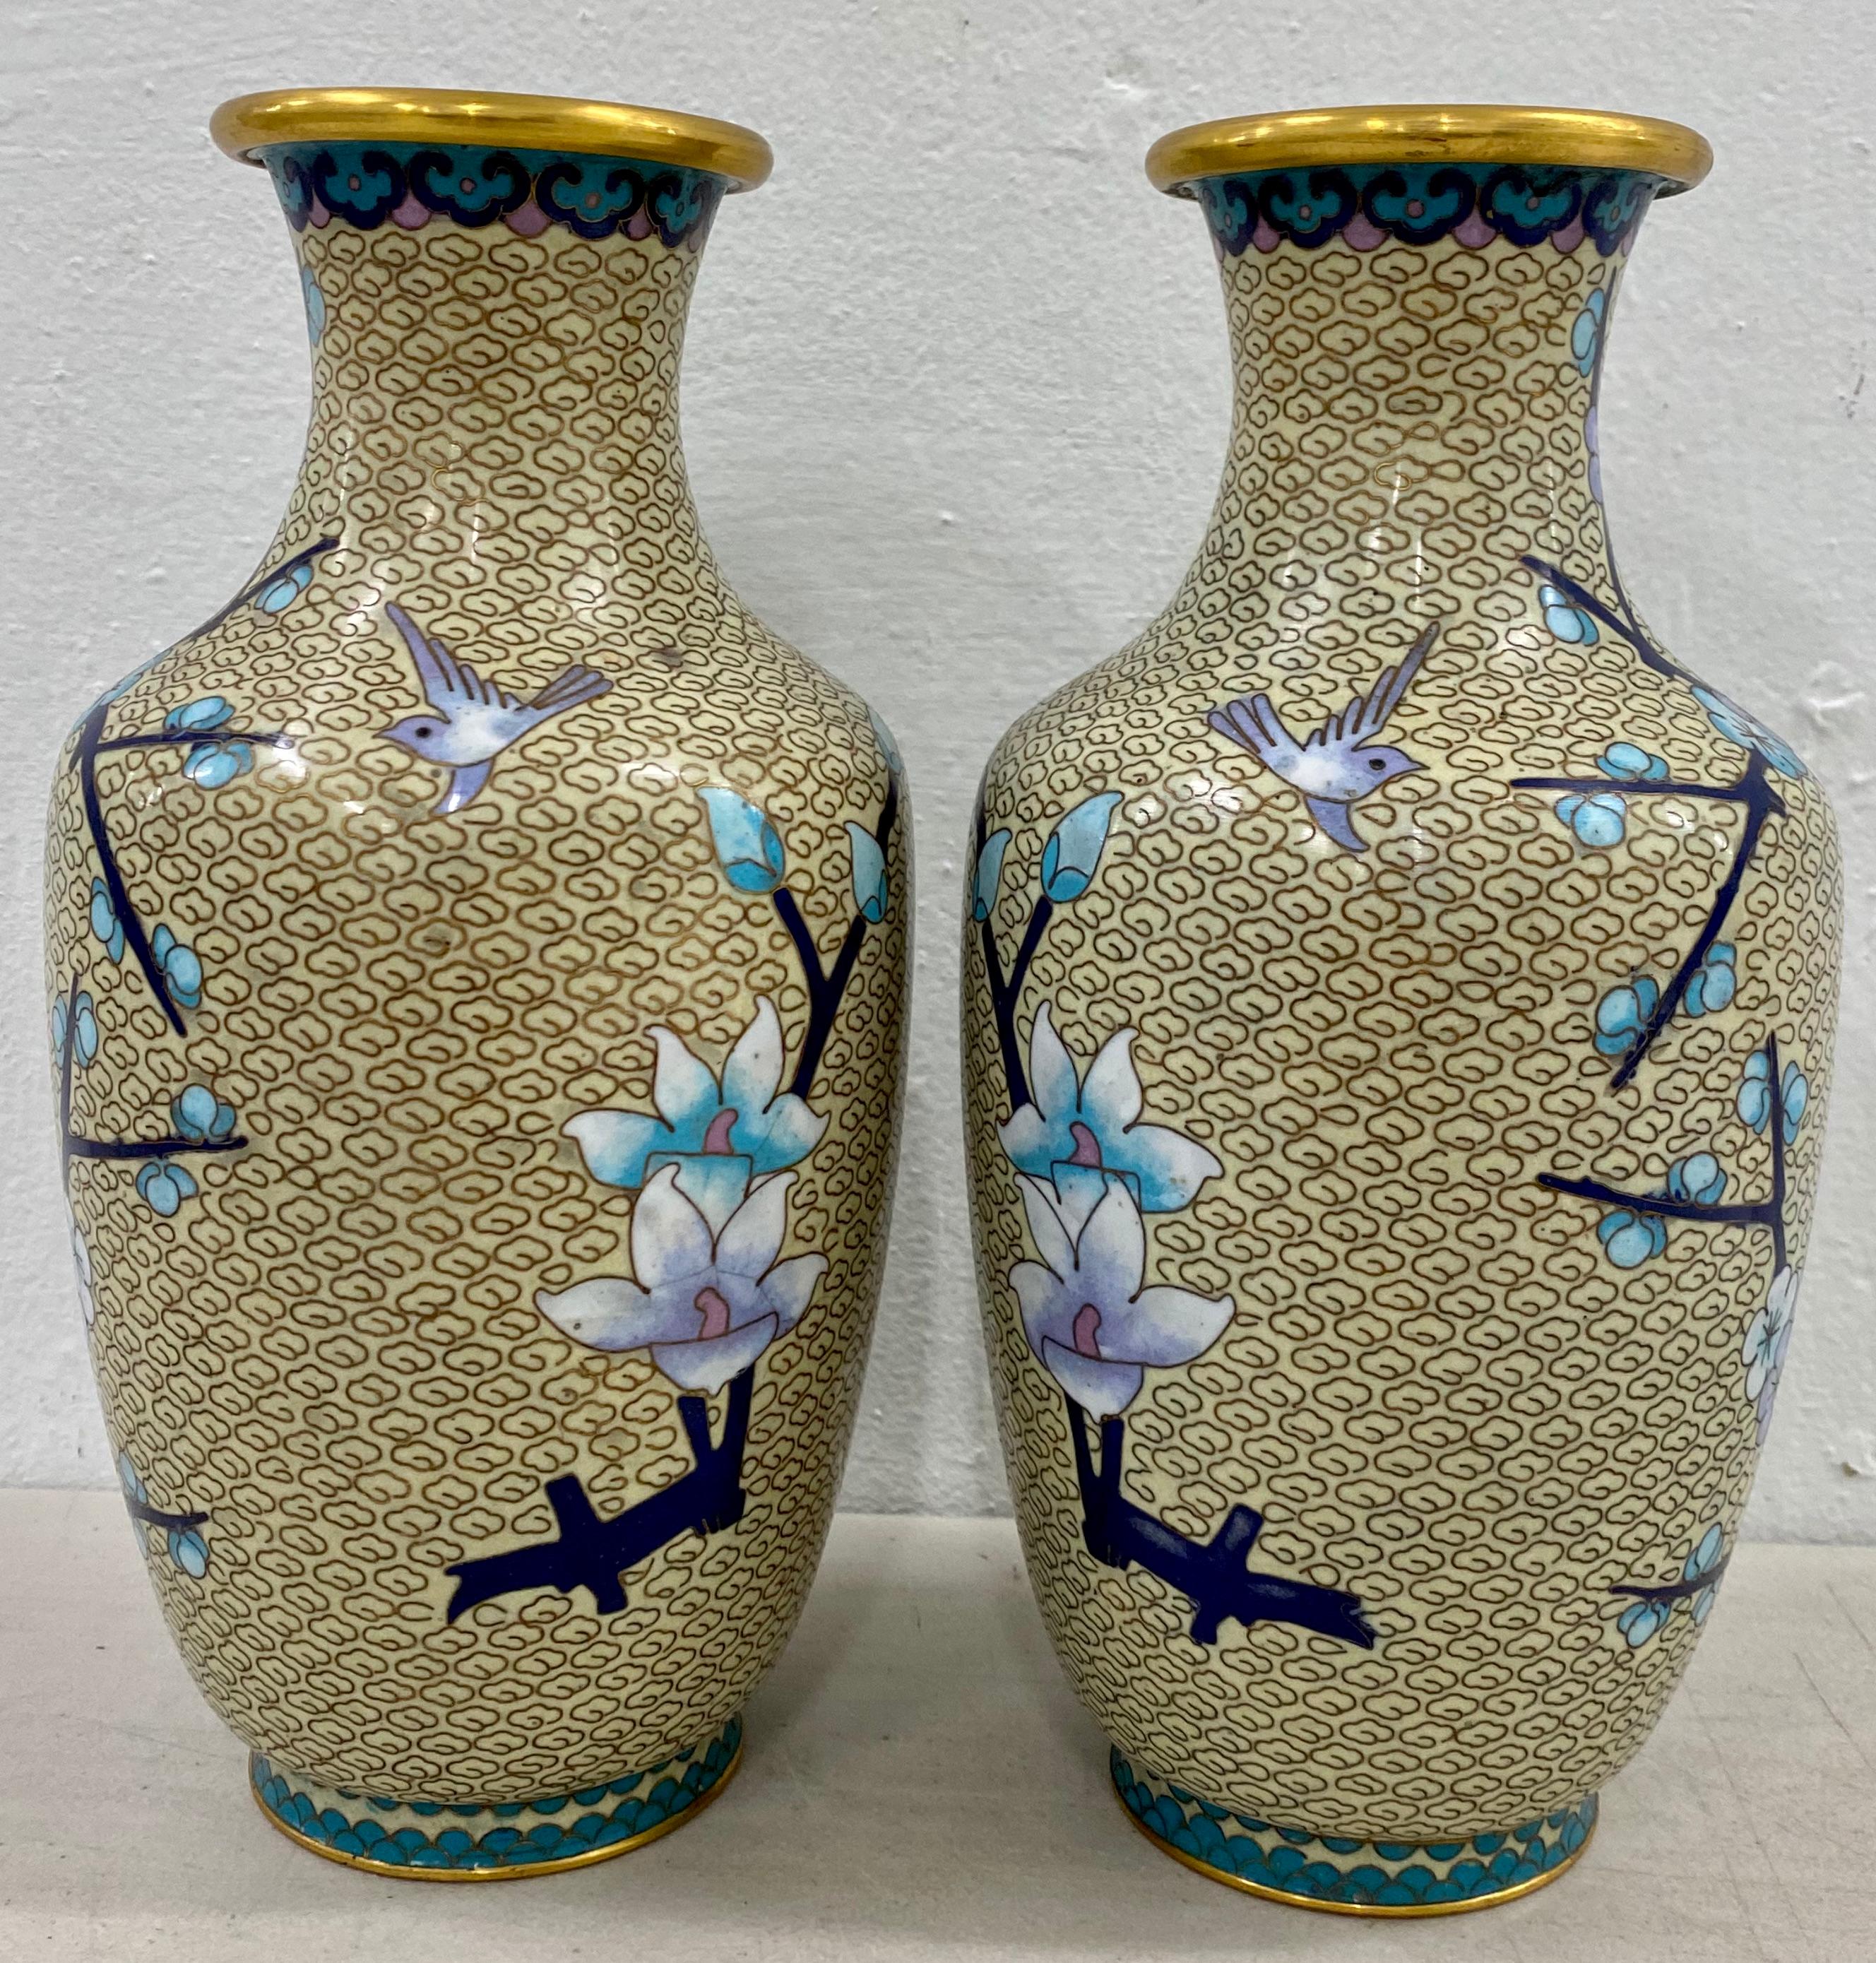 Vases en cloisonné, une paire - début ou milieu du 20e siècle

Magnifique motif de fleurs de cerisier en bleu et d'oiseaux sur un fond crème

Mesures : 3